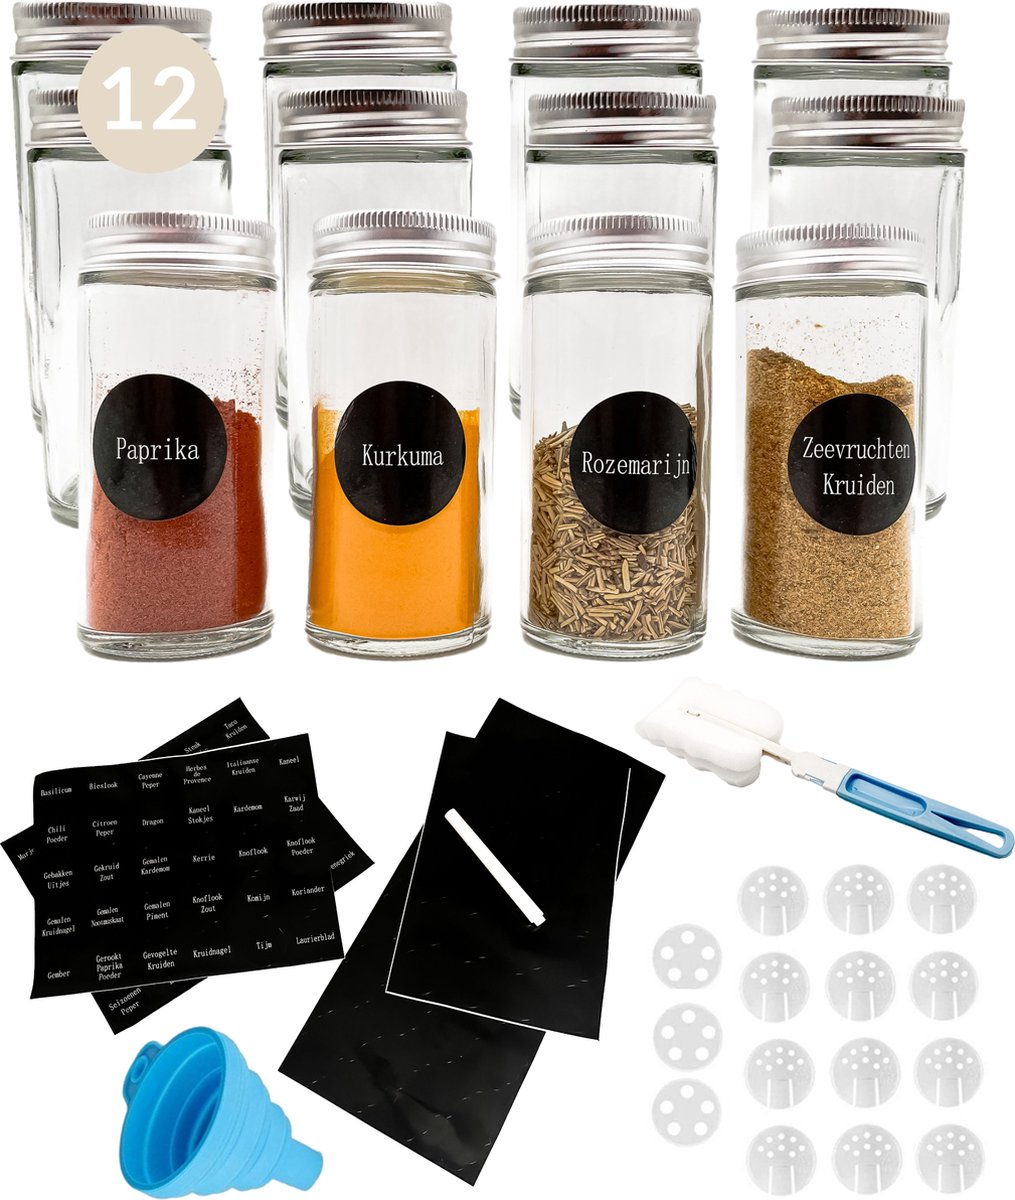 Comforder 12 Glazen Kruidenpotjes met Strooideksel - Kruidenstrooier Rond - Complete Set met Bedrukte Stickers, Trechter en Meer